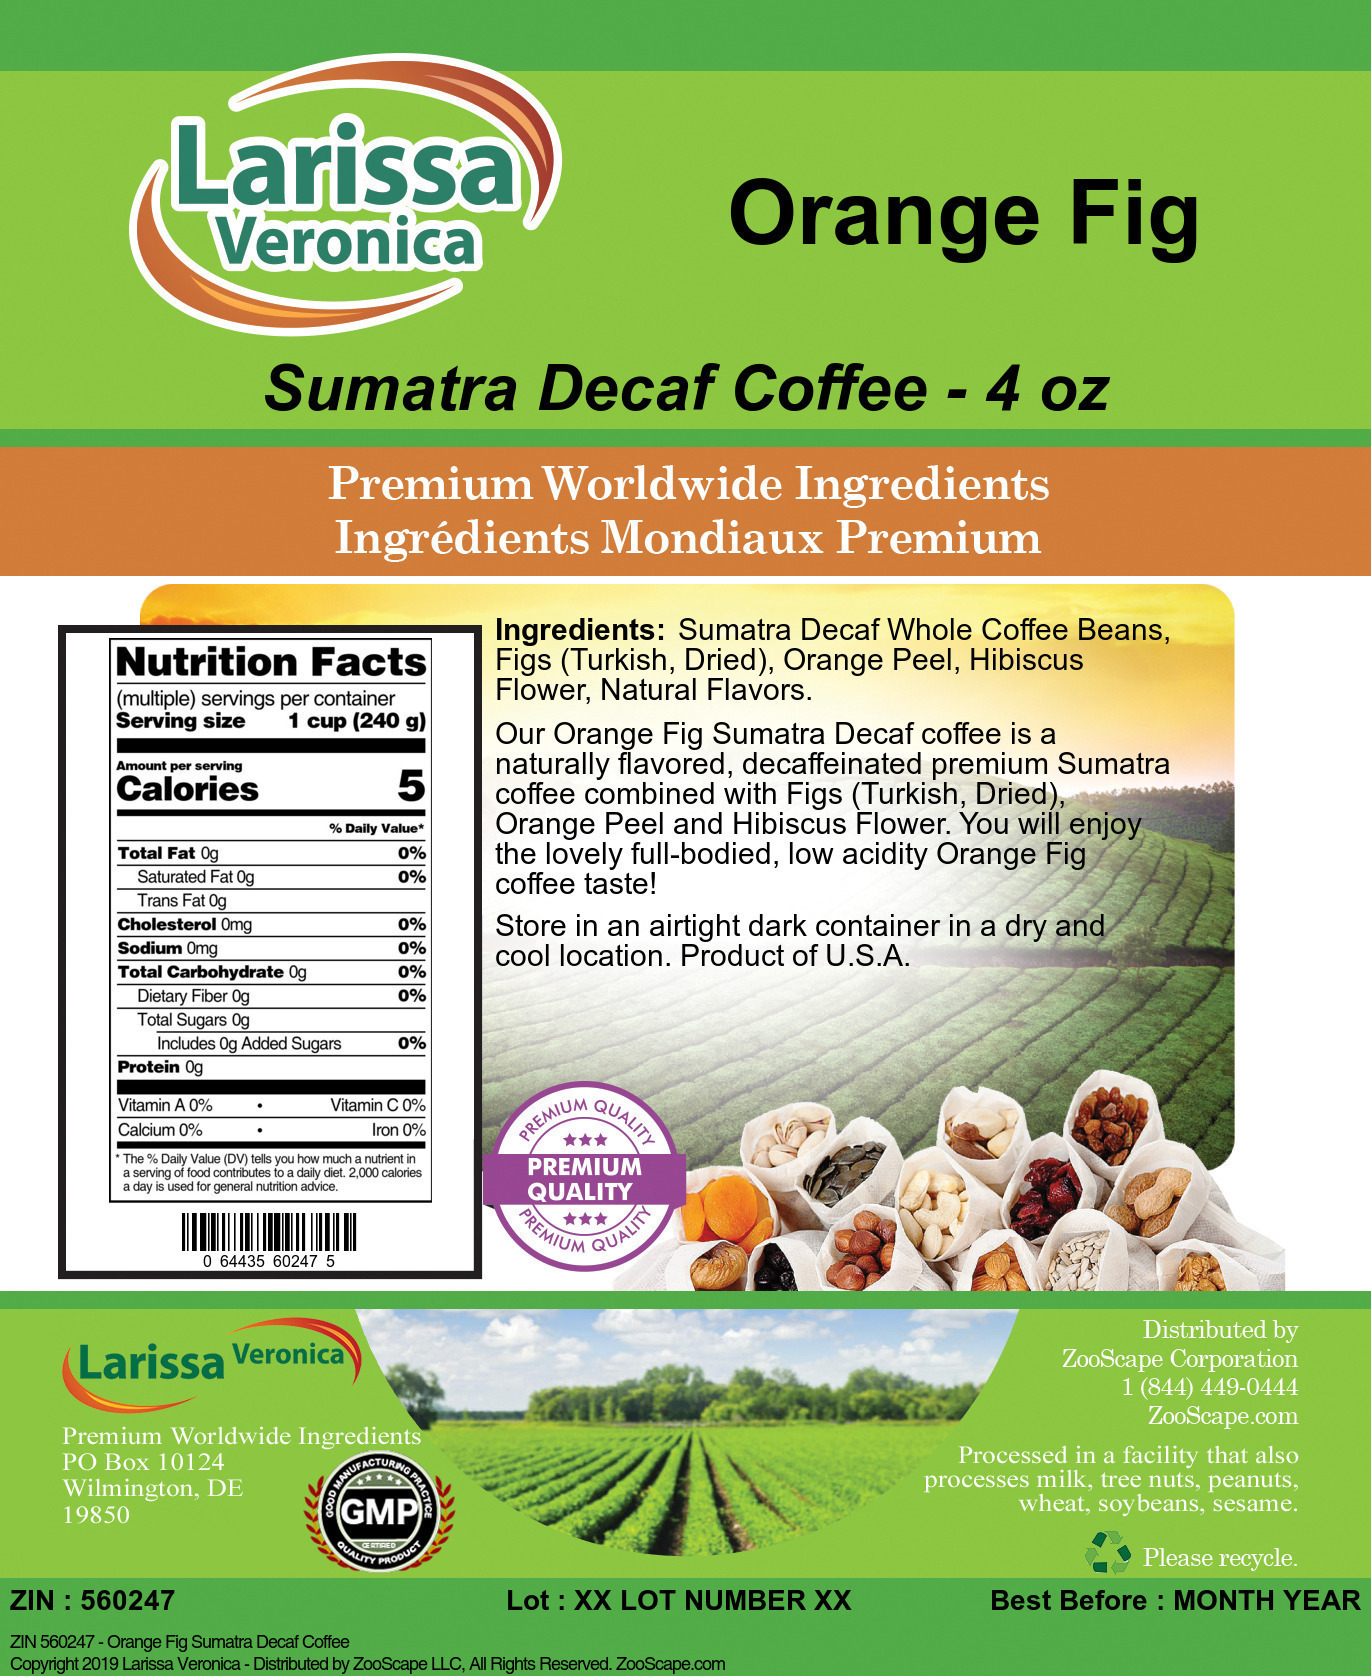 Orange Fig Sumatra Decaf Coffee - Label